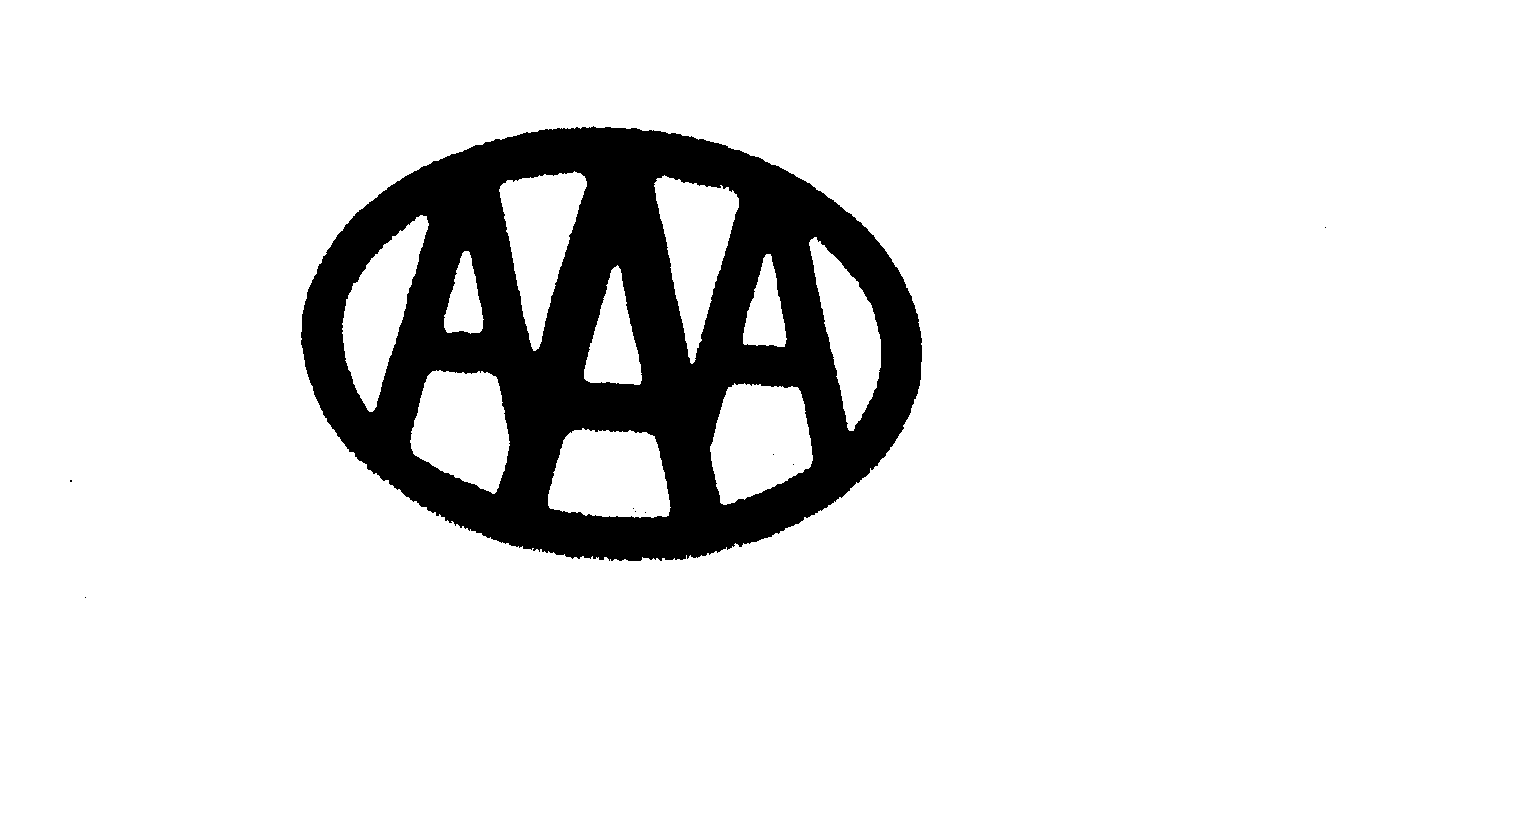  AAA